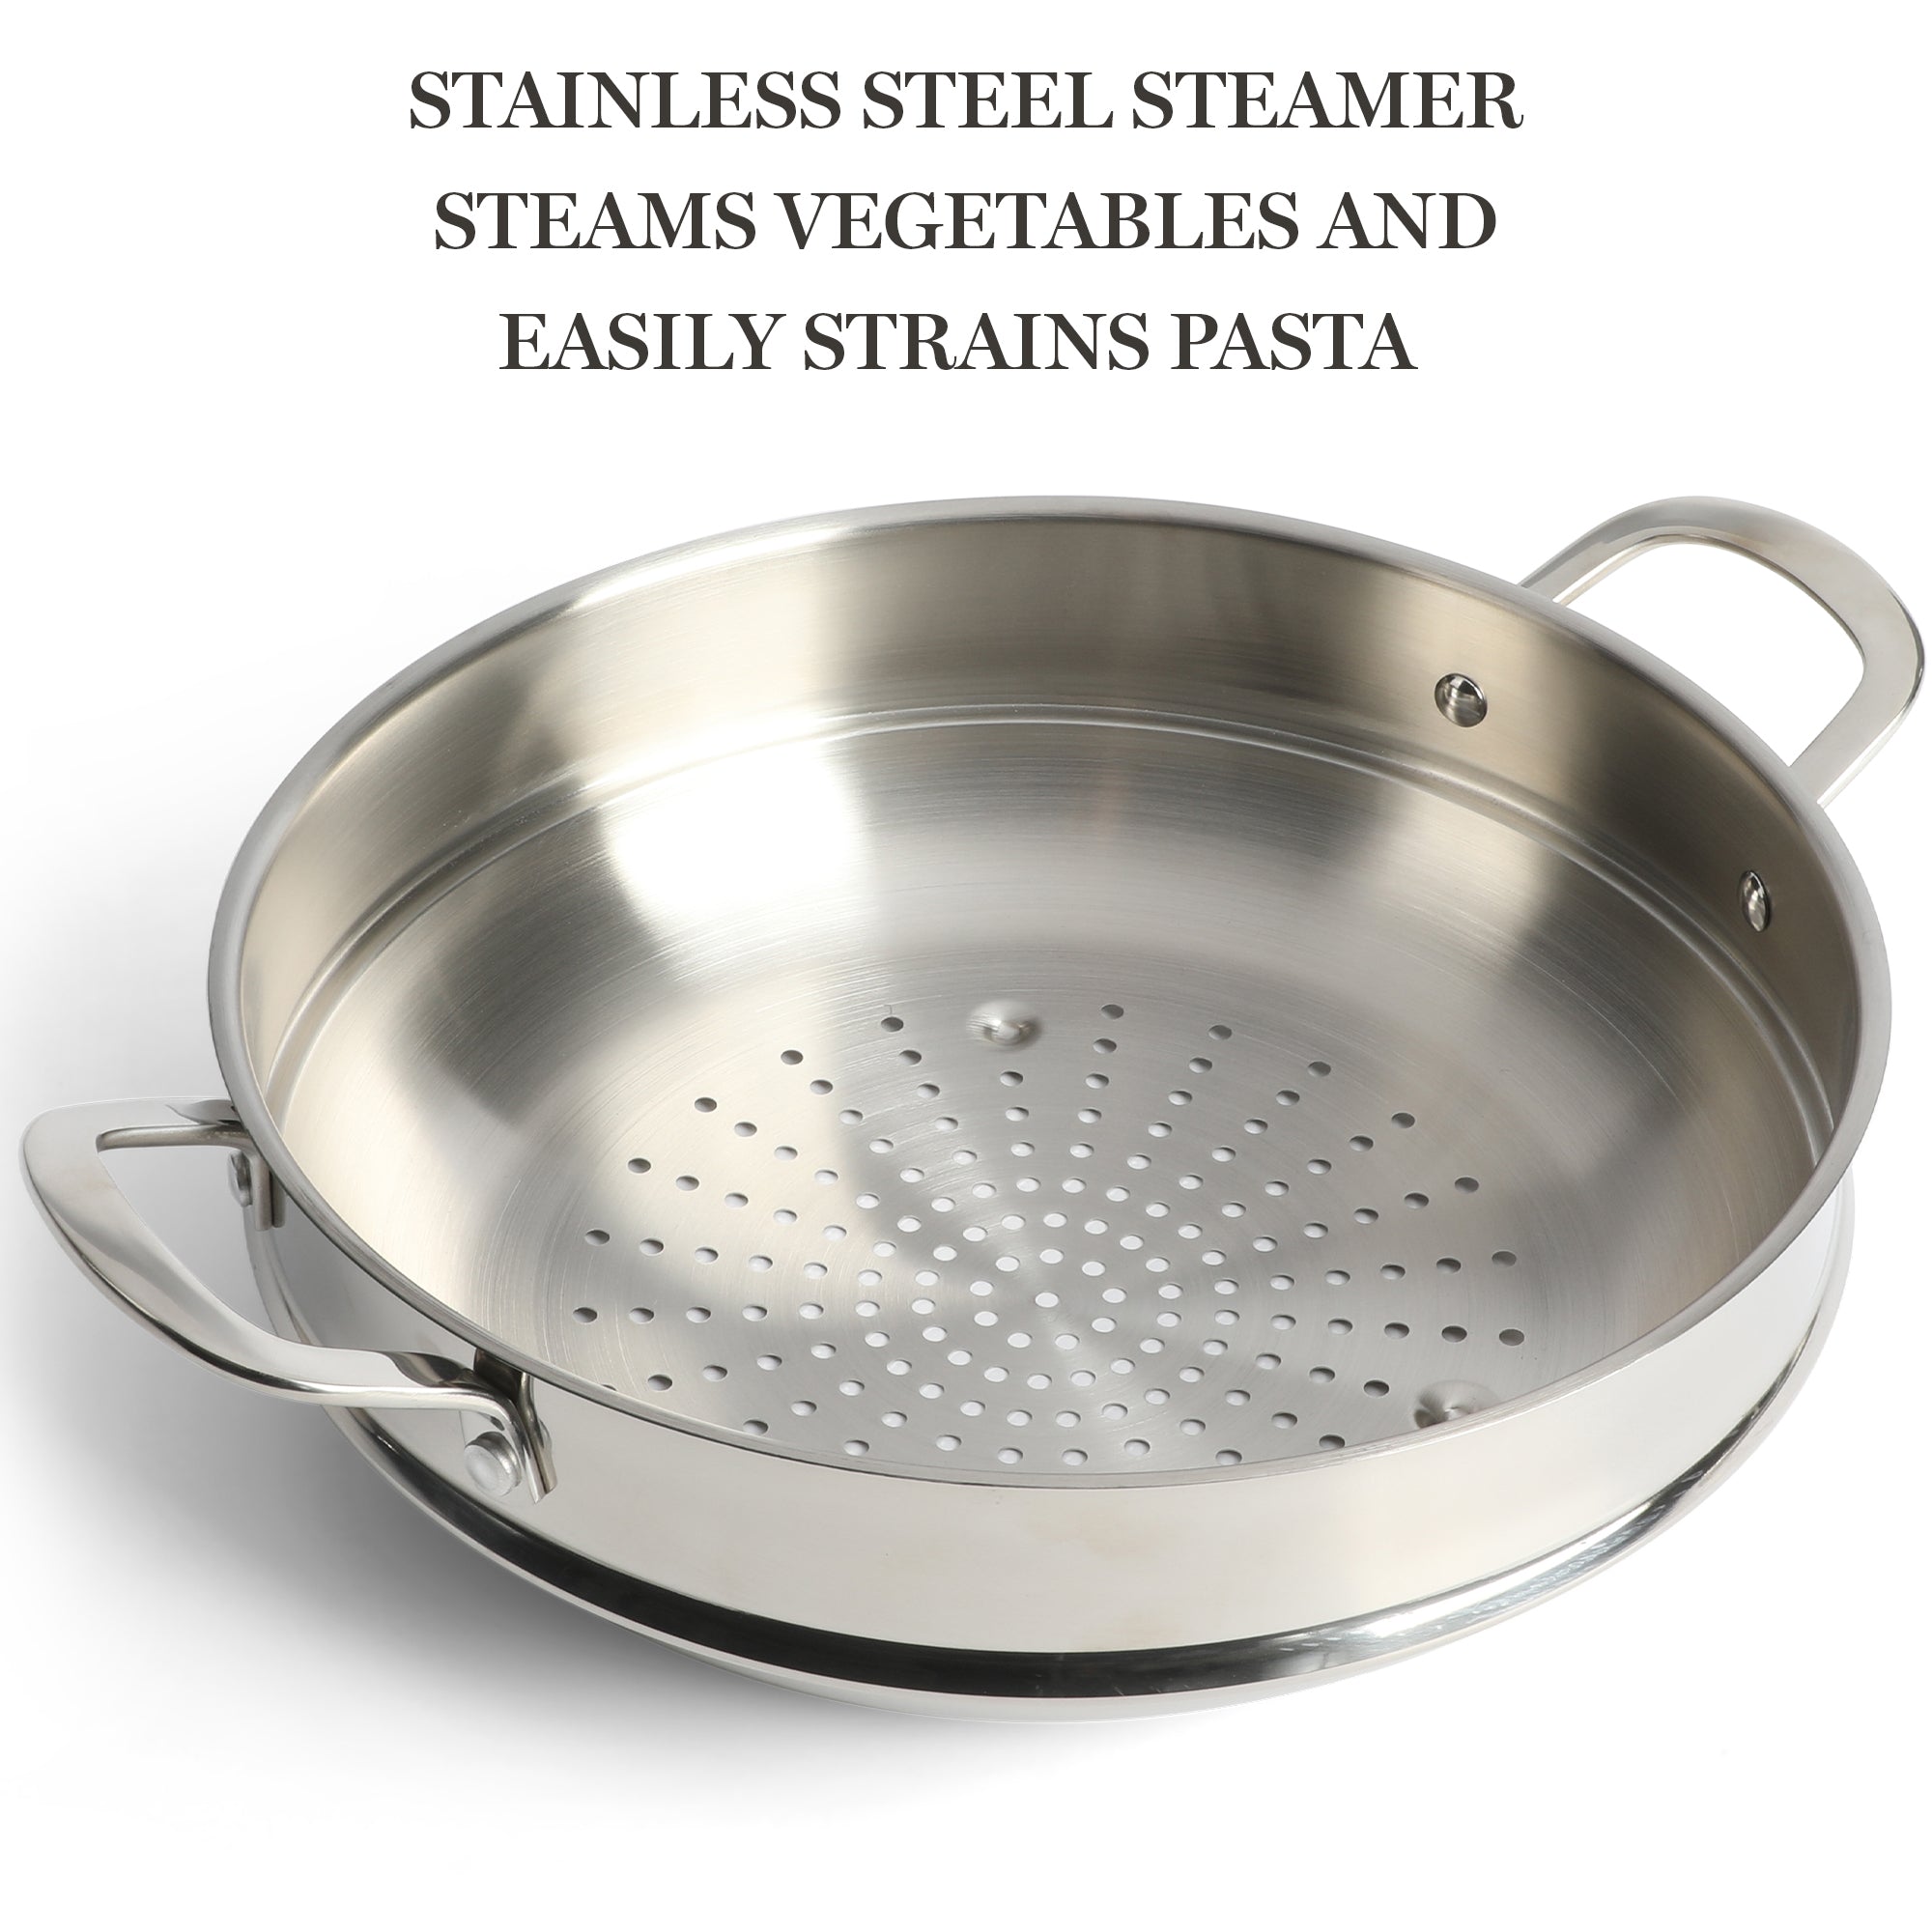 Martha Stewart Vintage 18/8 Tri-ply Stainless Steel 12-Piece Cookware